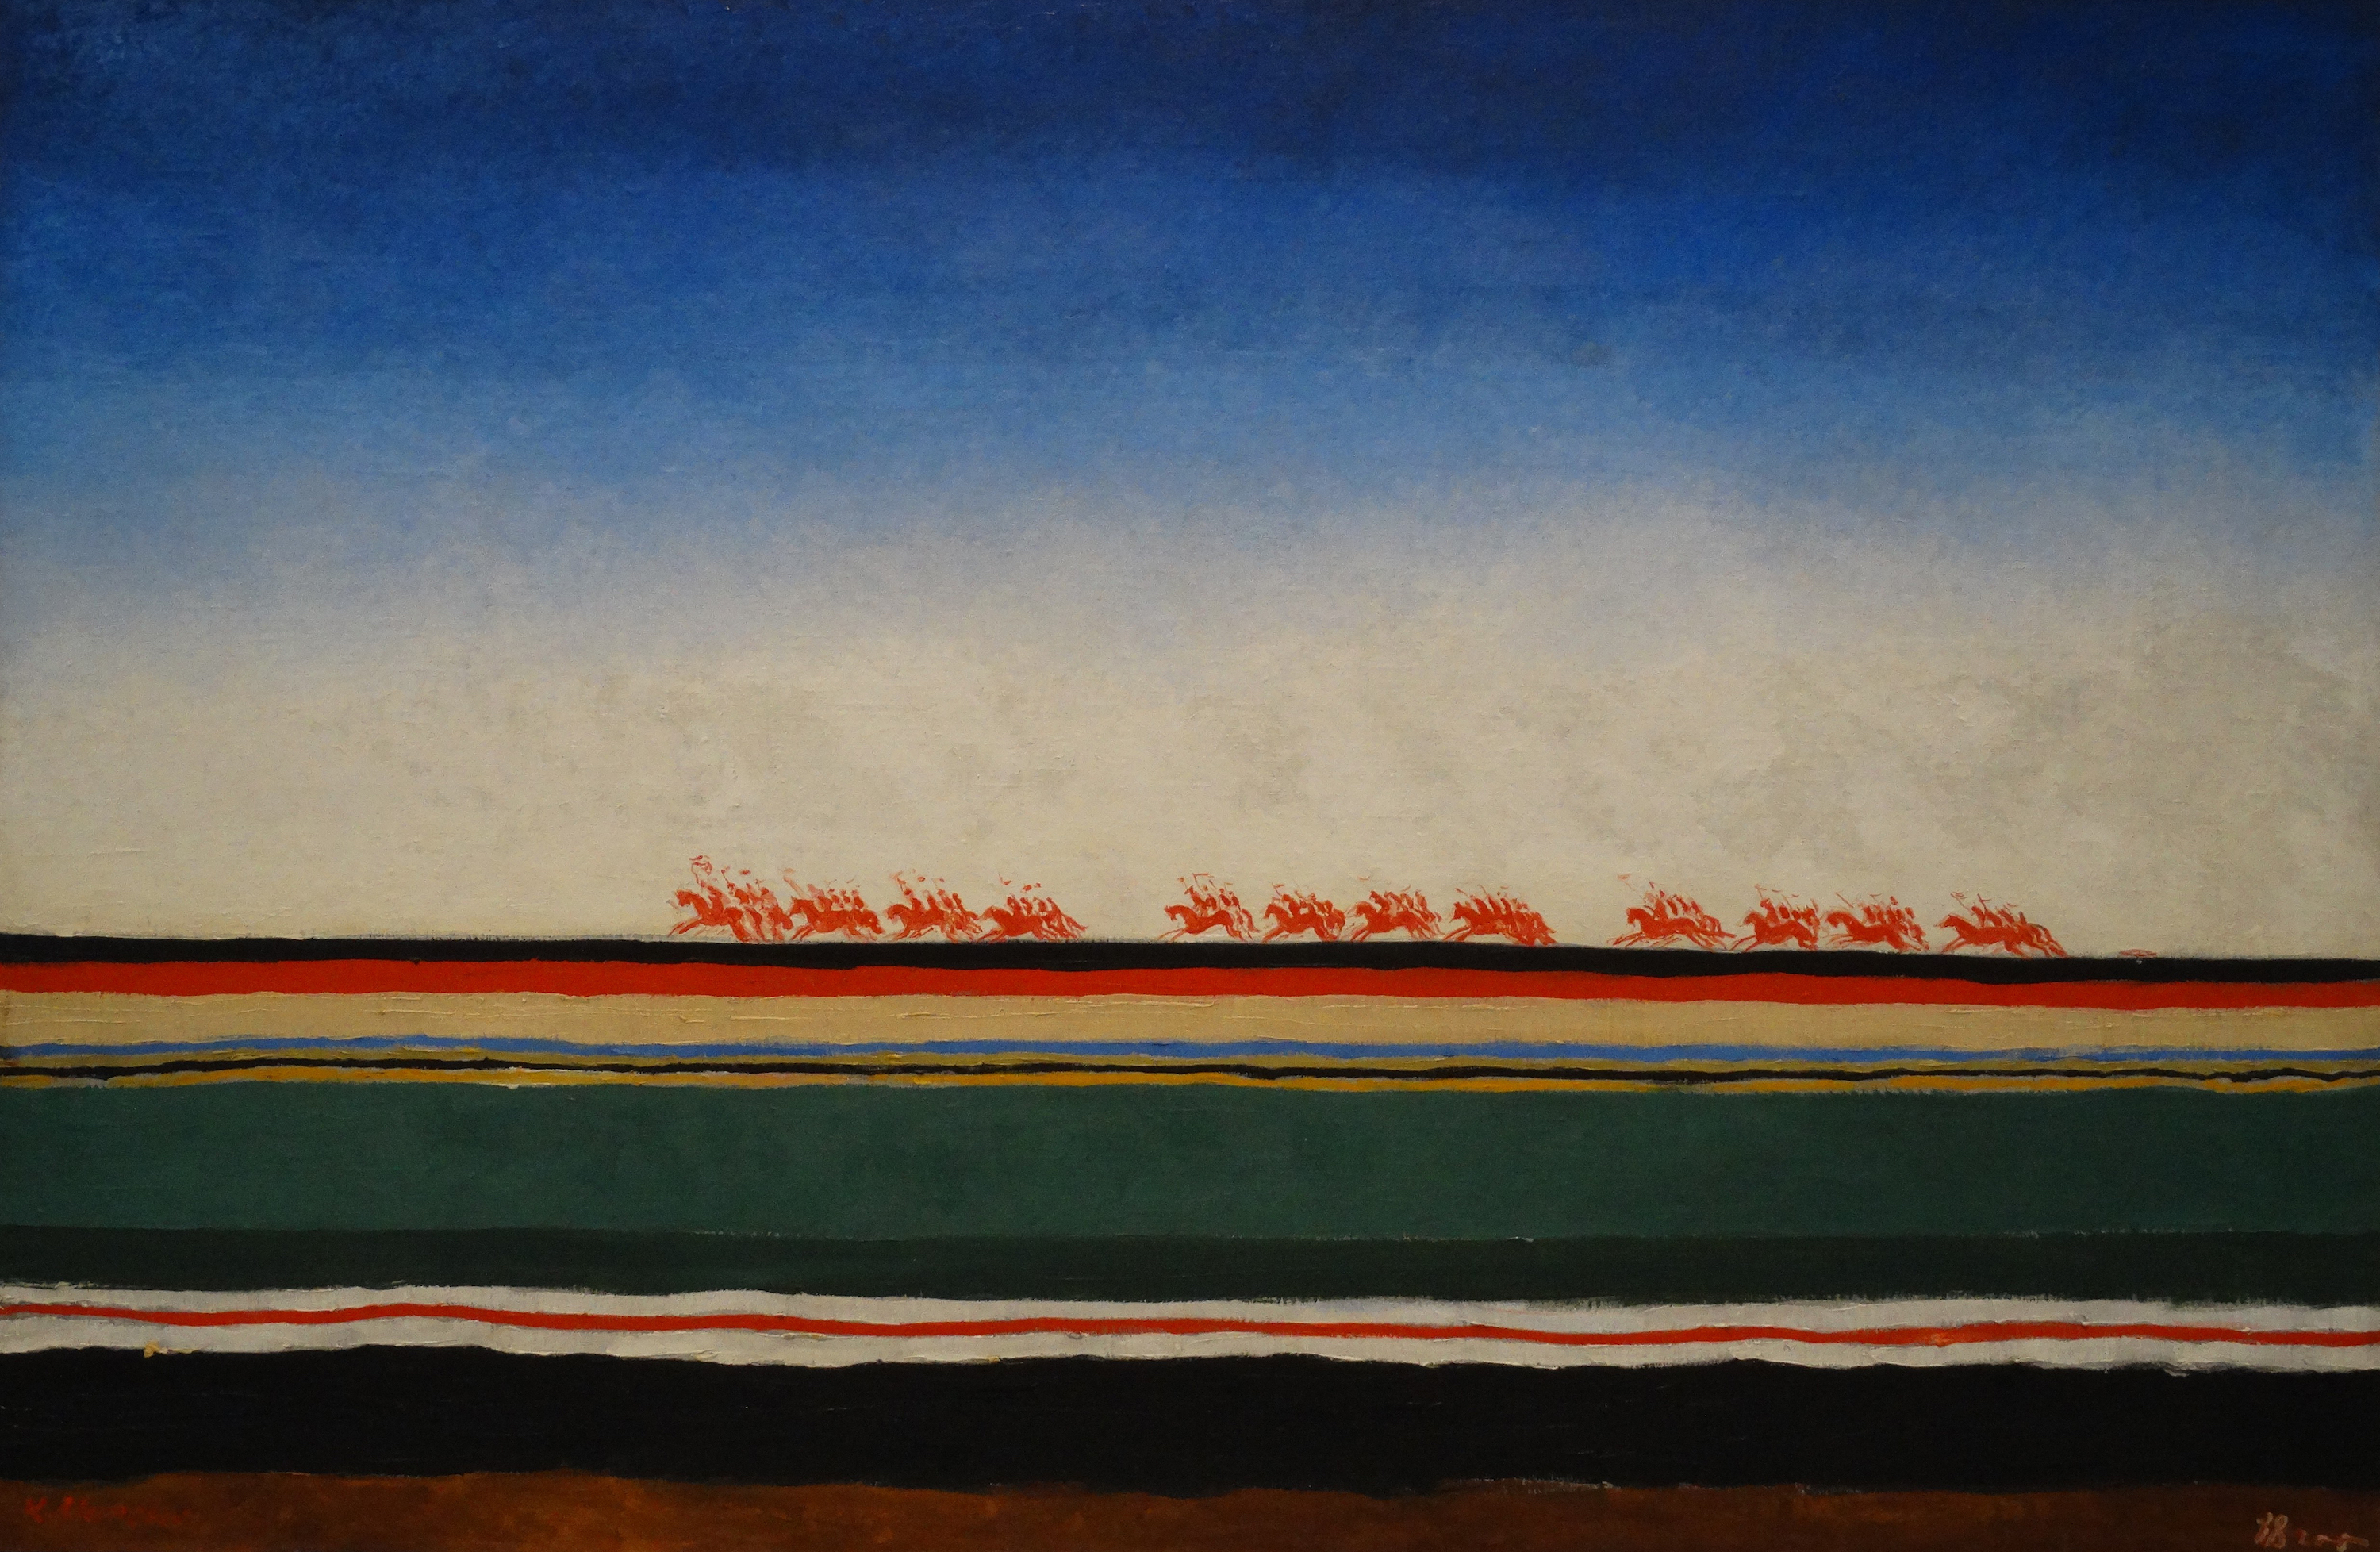 红色骑兵 by 卡济米尔· 马列维奇 - 大约 1932 - 91 x 140 厘米 